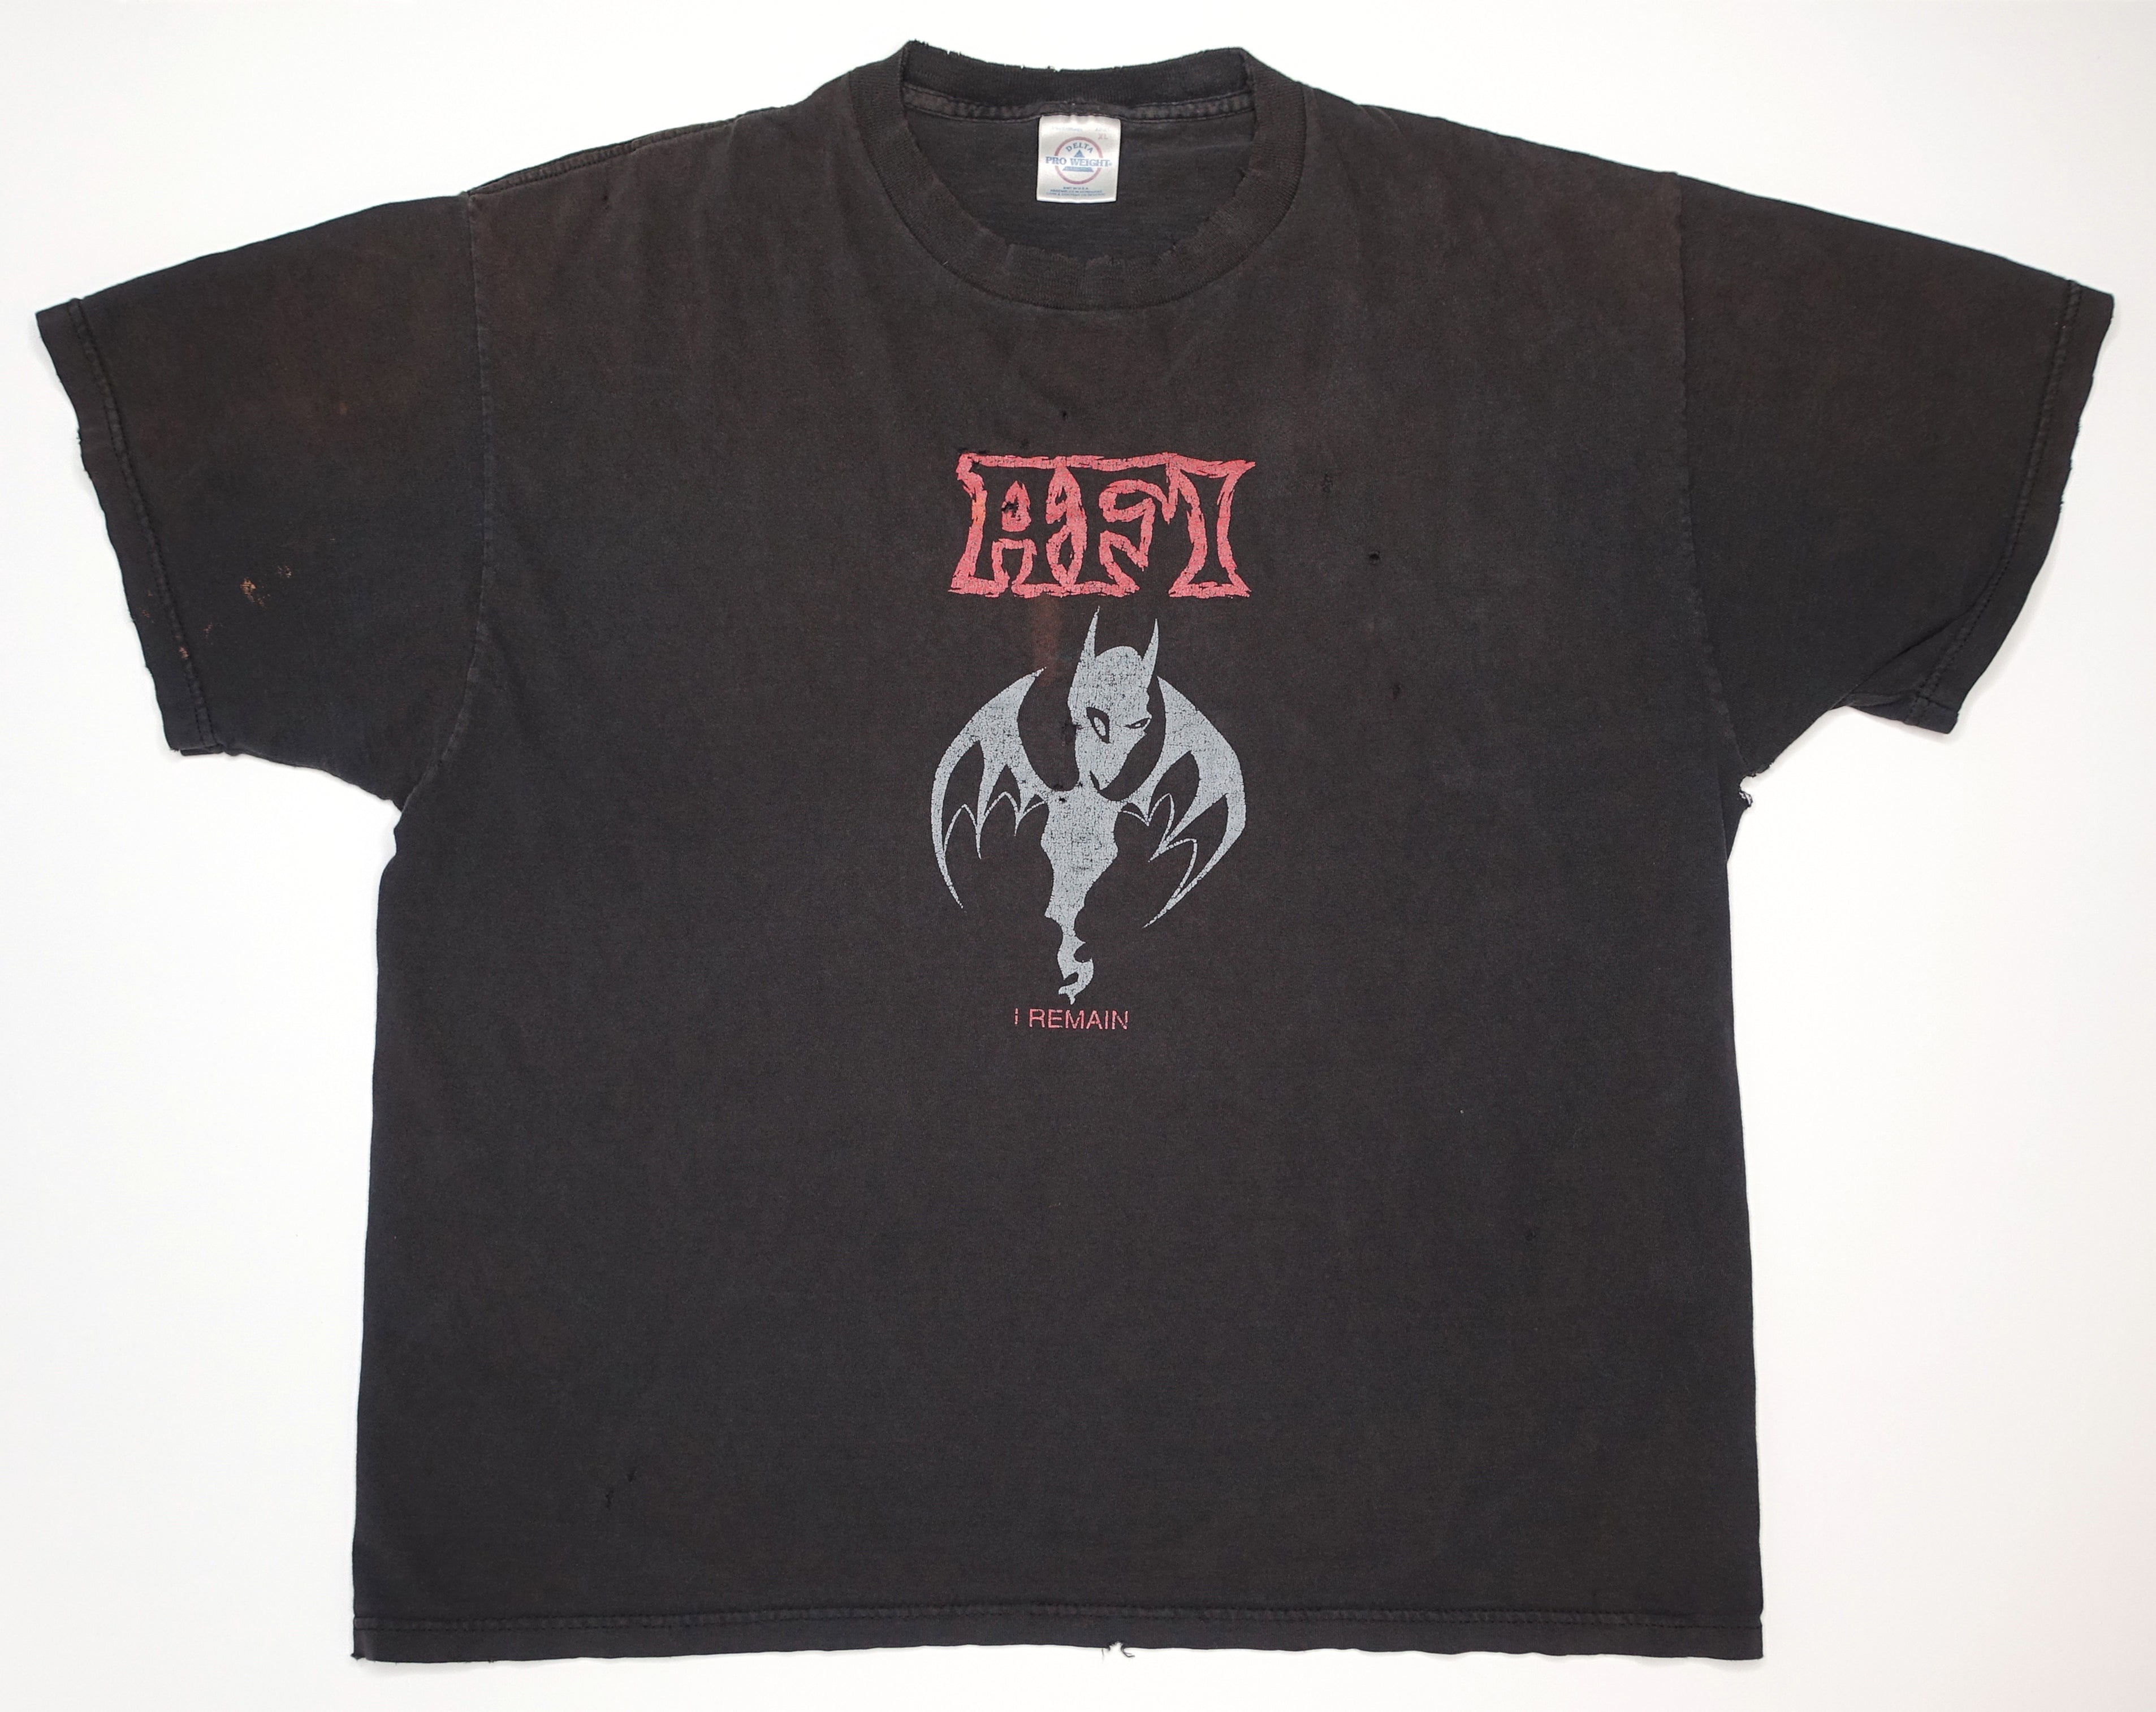 AFI - I Remain / Art Of Drowning 2000 Tour Shirt Size XL